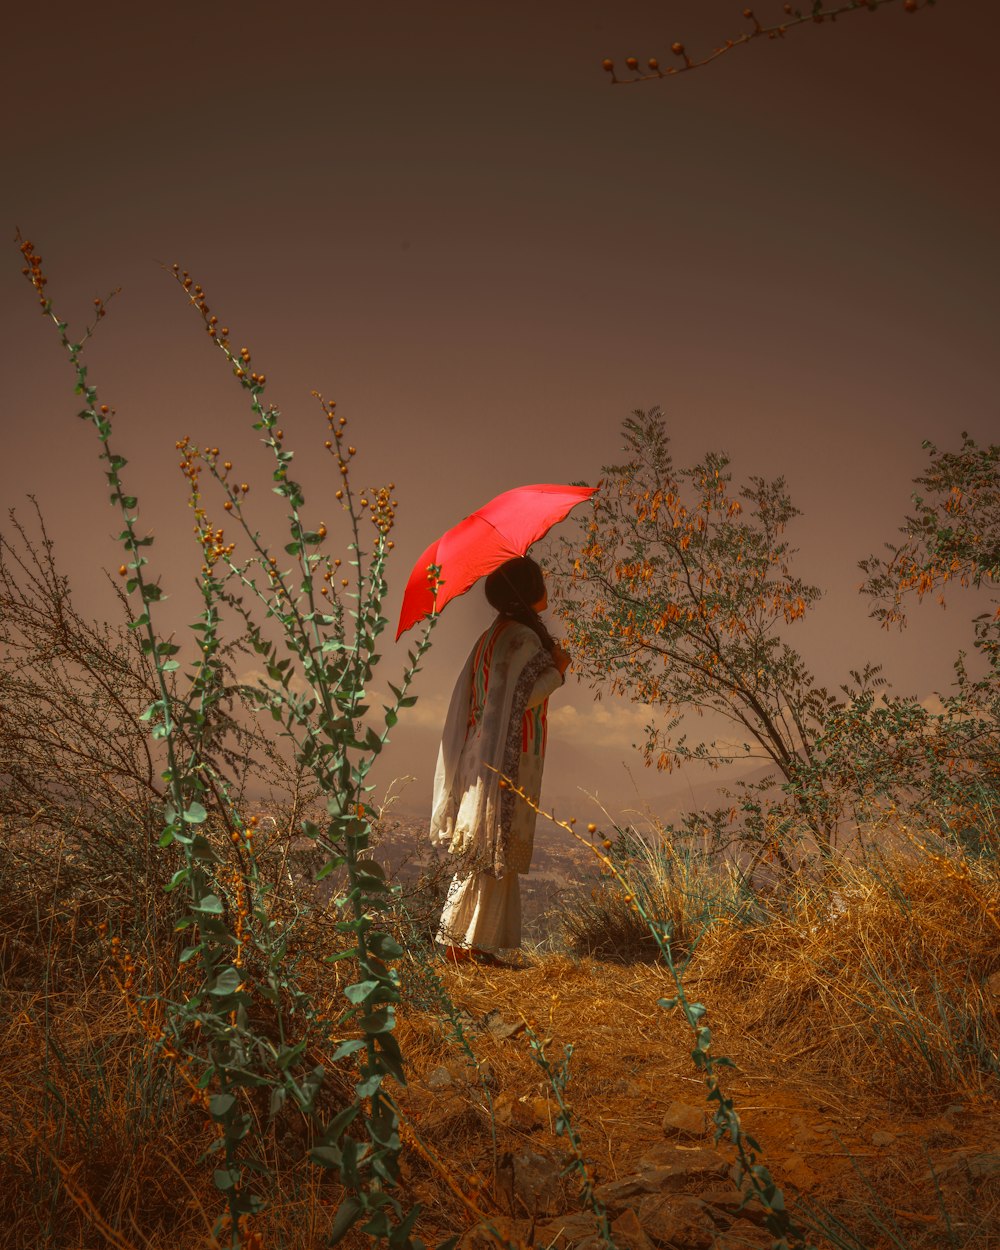 昼間、茶色の草原に立つ赤い傘を持つ灰色のドレスを着た女性